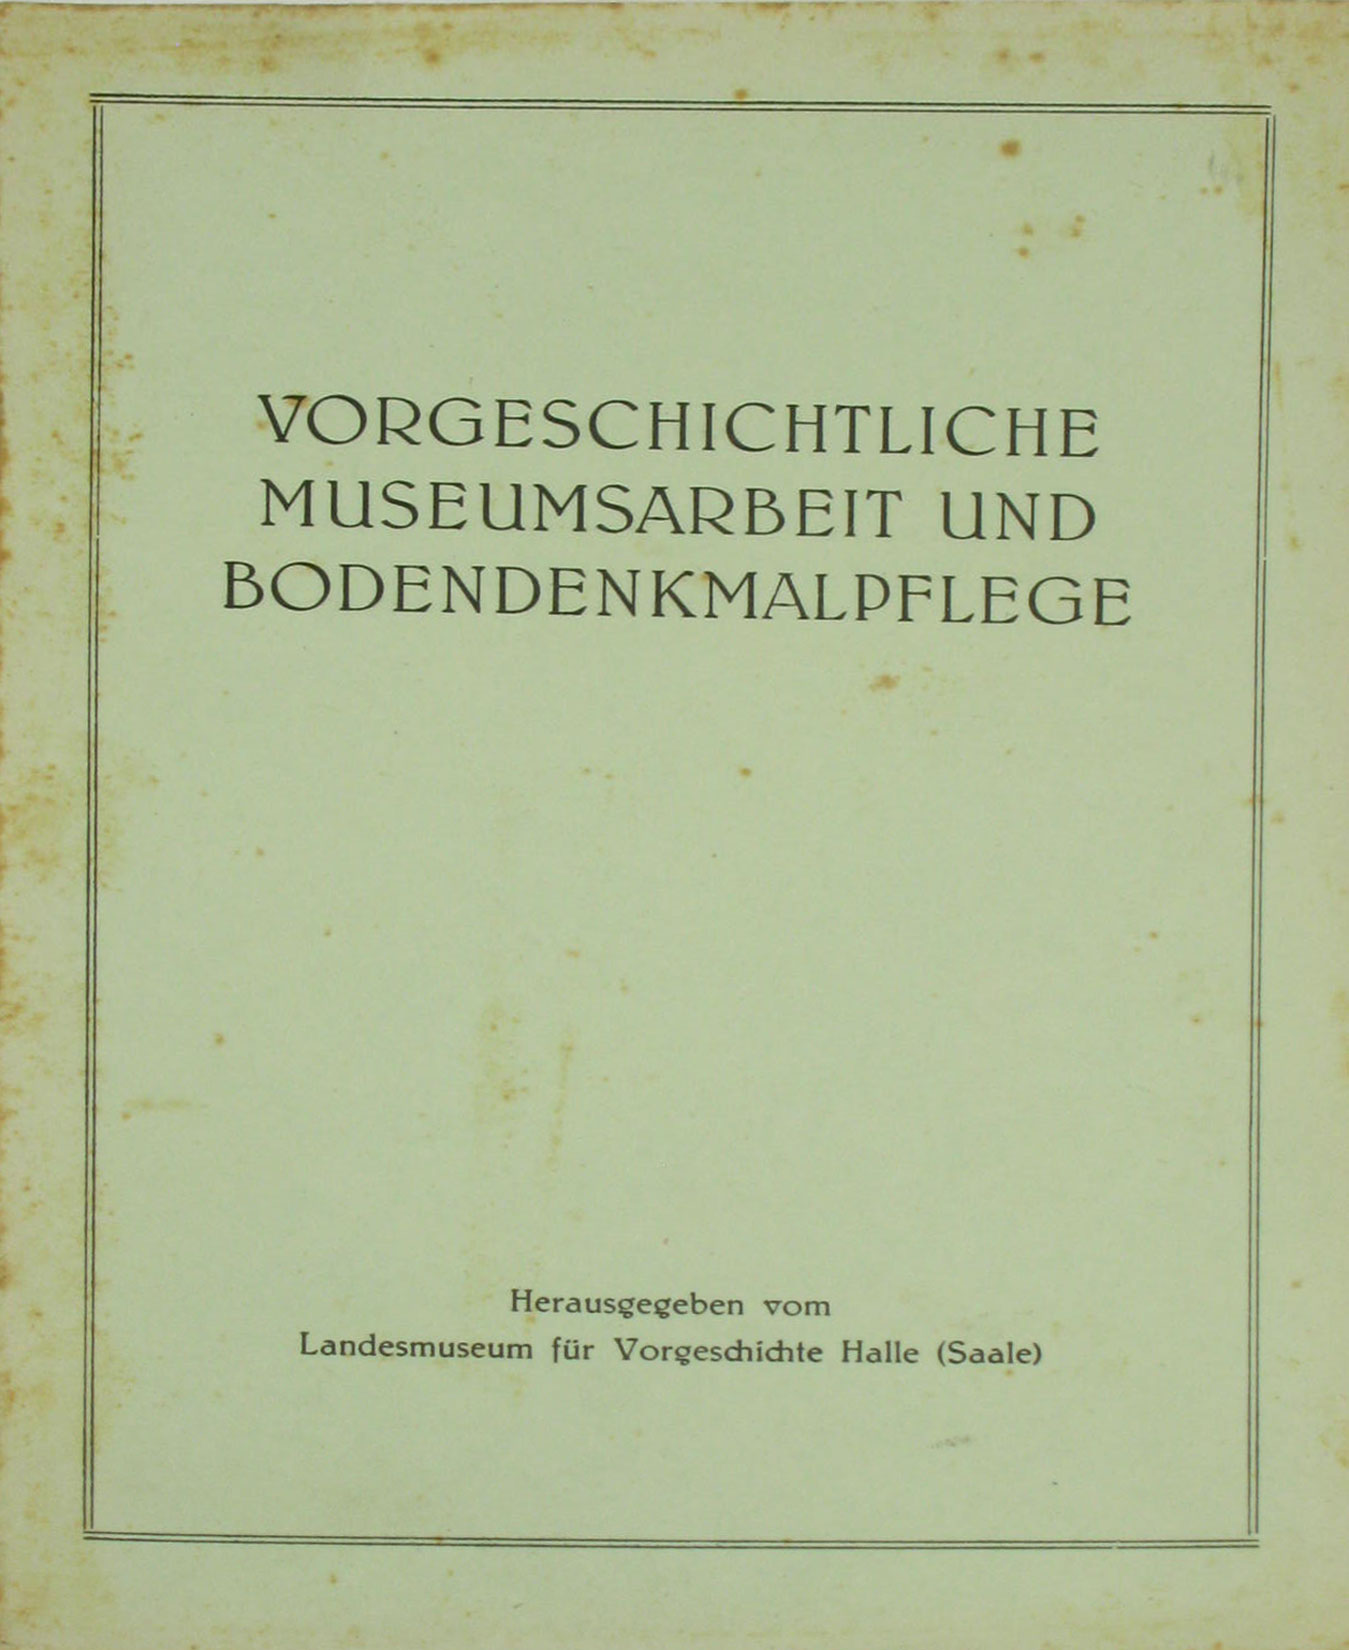   Vorgeschichtliche Museumsarbeit und Bodendenkmalpflege (Nr. 1 / 1957) 